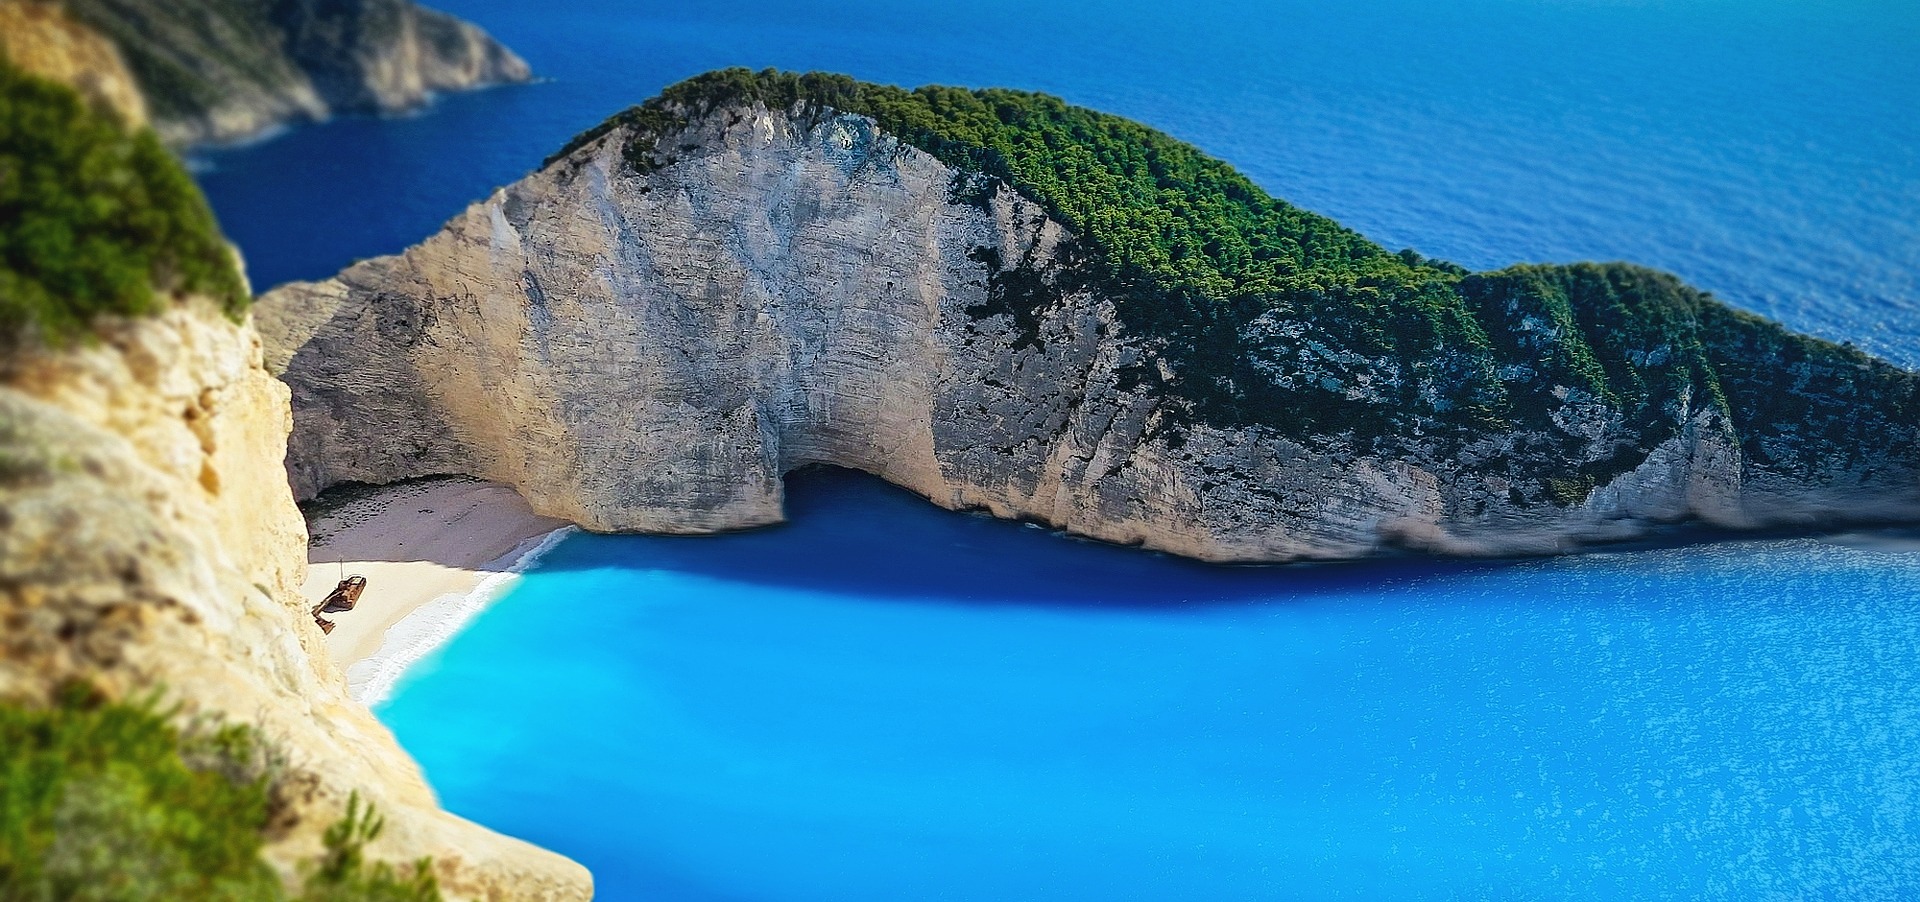 Griechische Inseln Reise Deals & die beste Reisezeit im Überblick